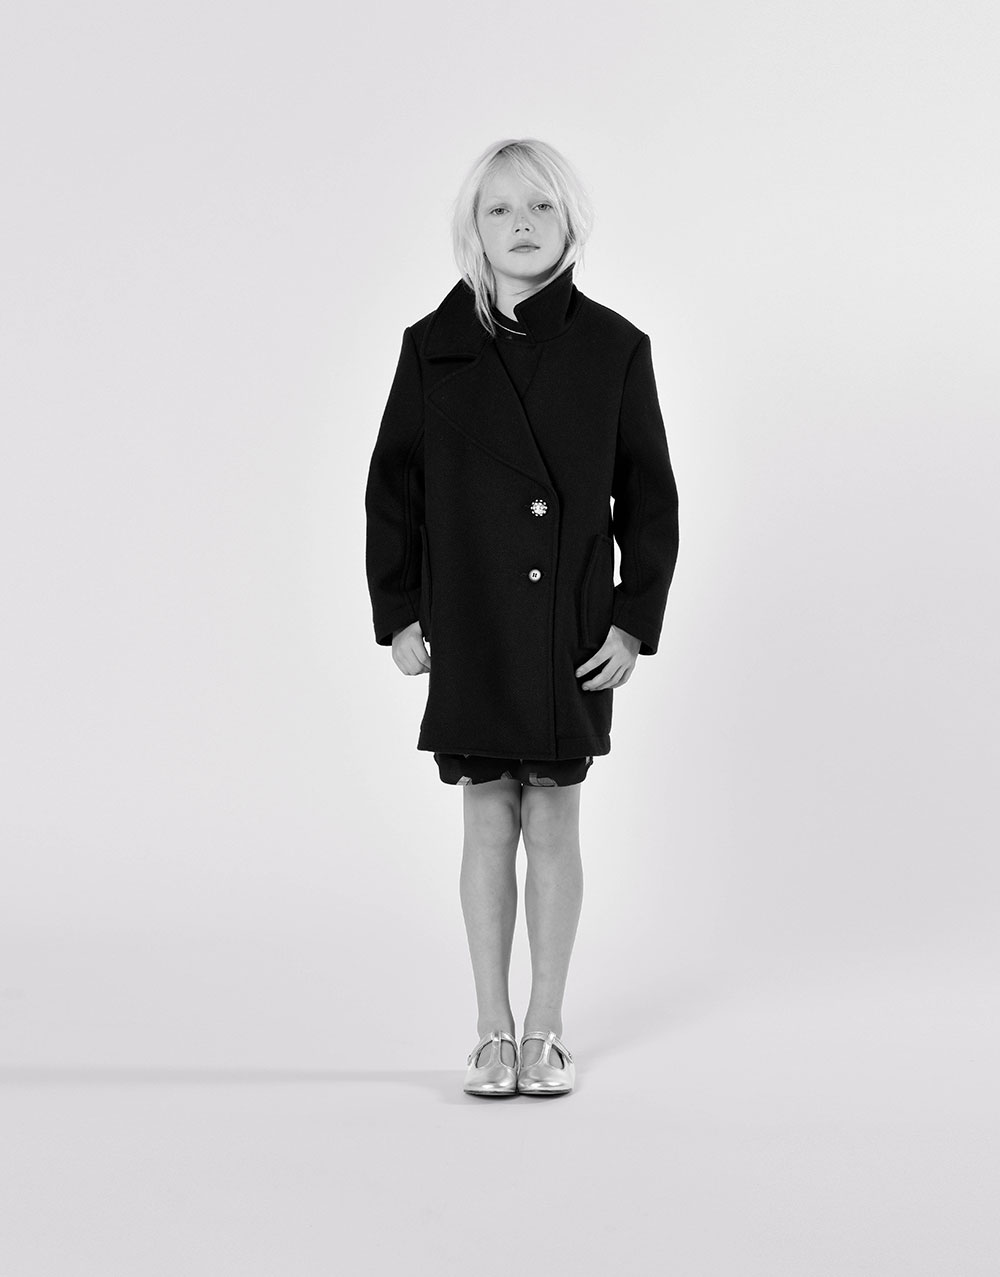 schwarzes Kleid und schwarzer Mantel von der Marke Lanvin Mädchenkollektion Herbst/Winter 